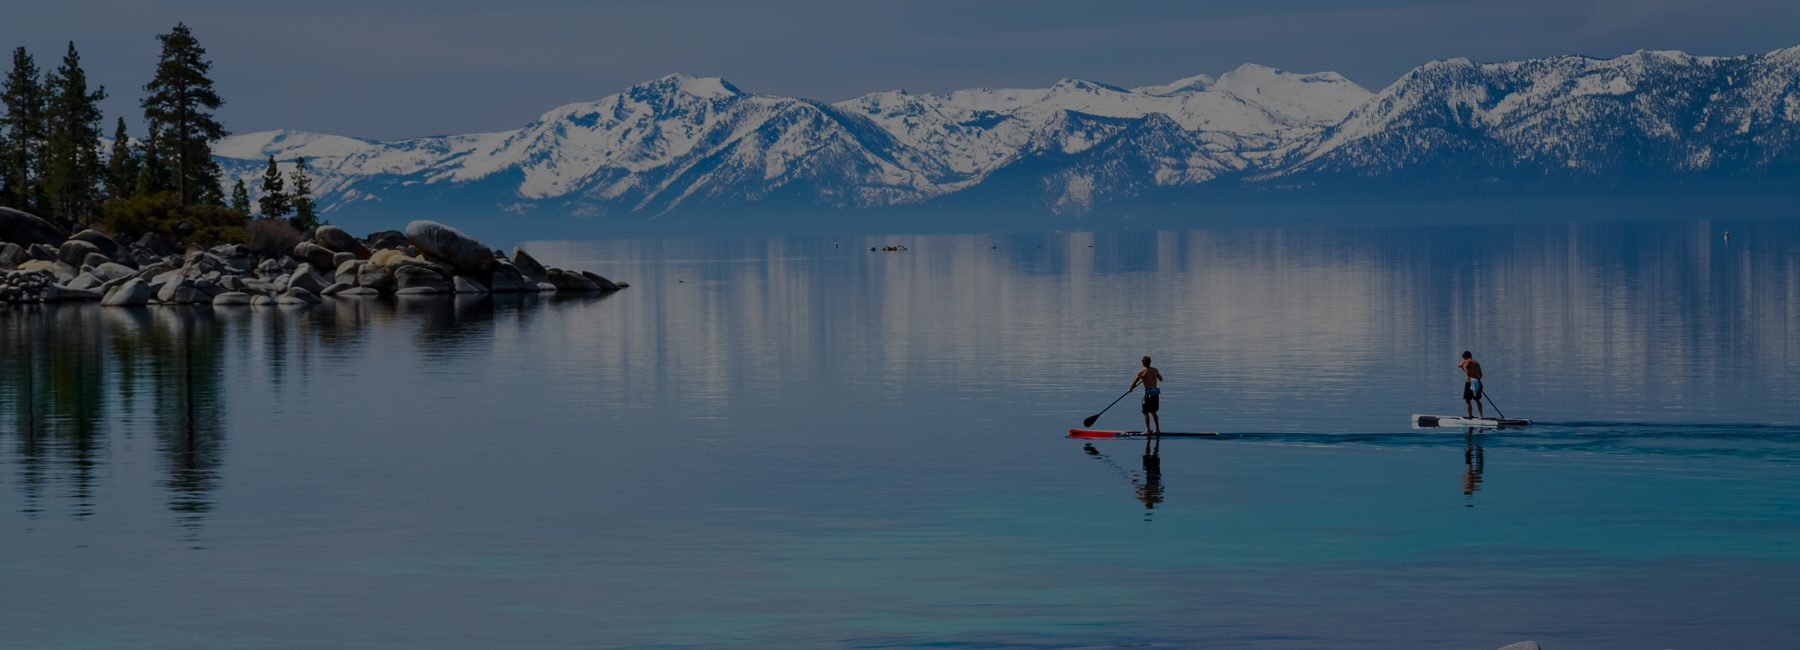 Tahoe Paddle Board Rental